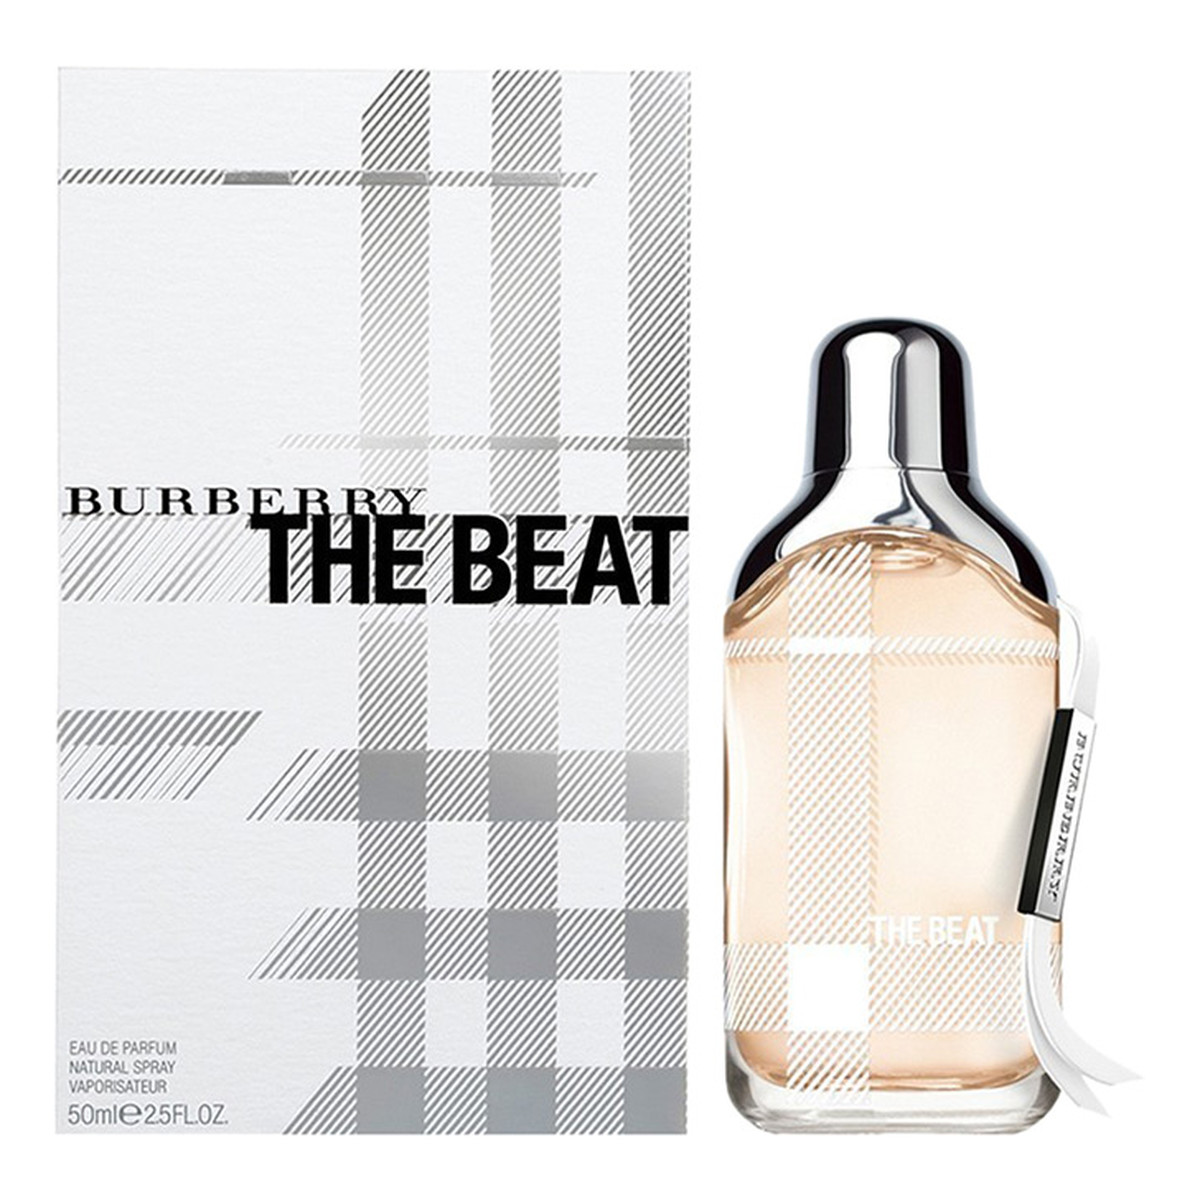 Burberry The Beat woda perfumowana 50ml